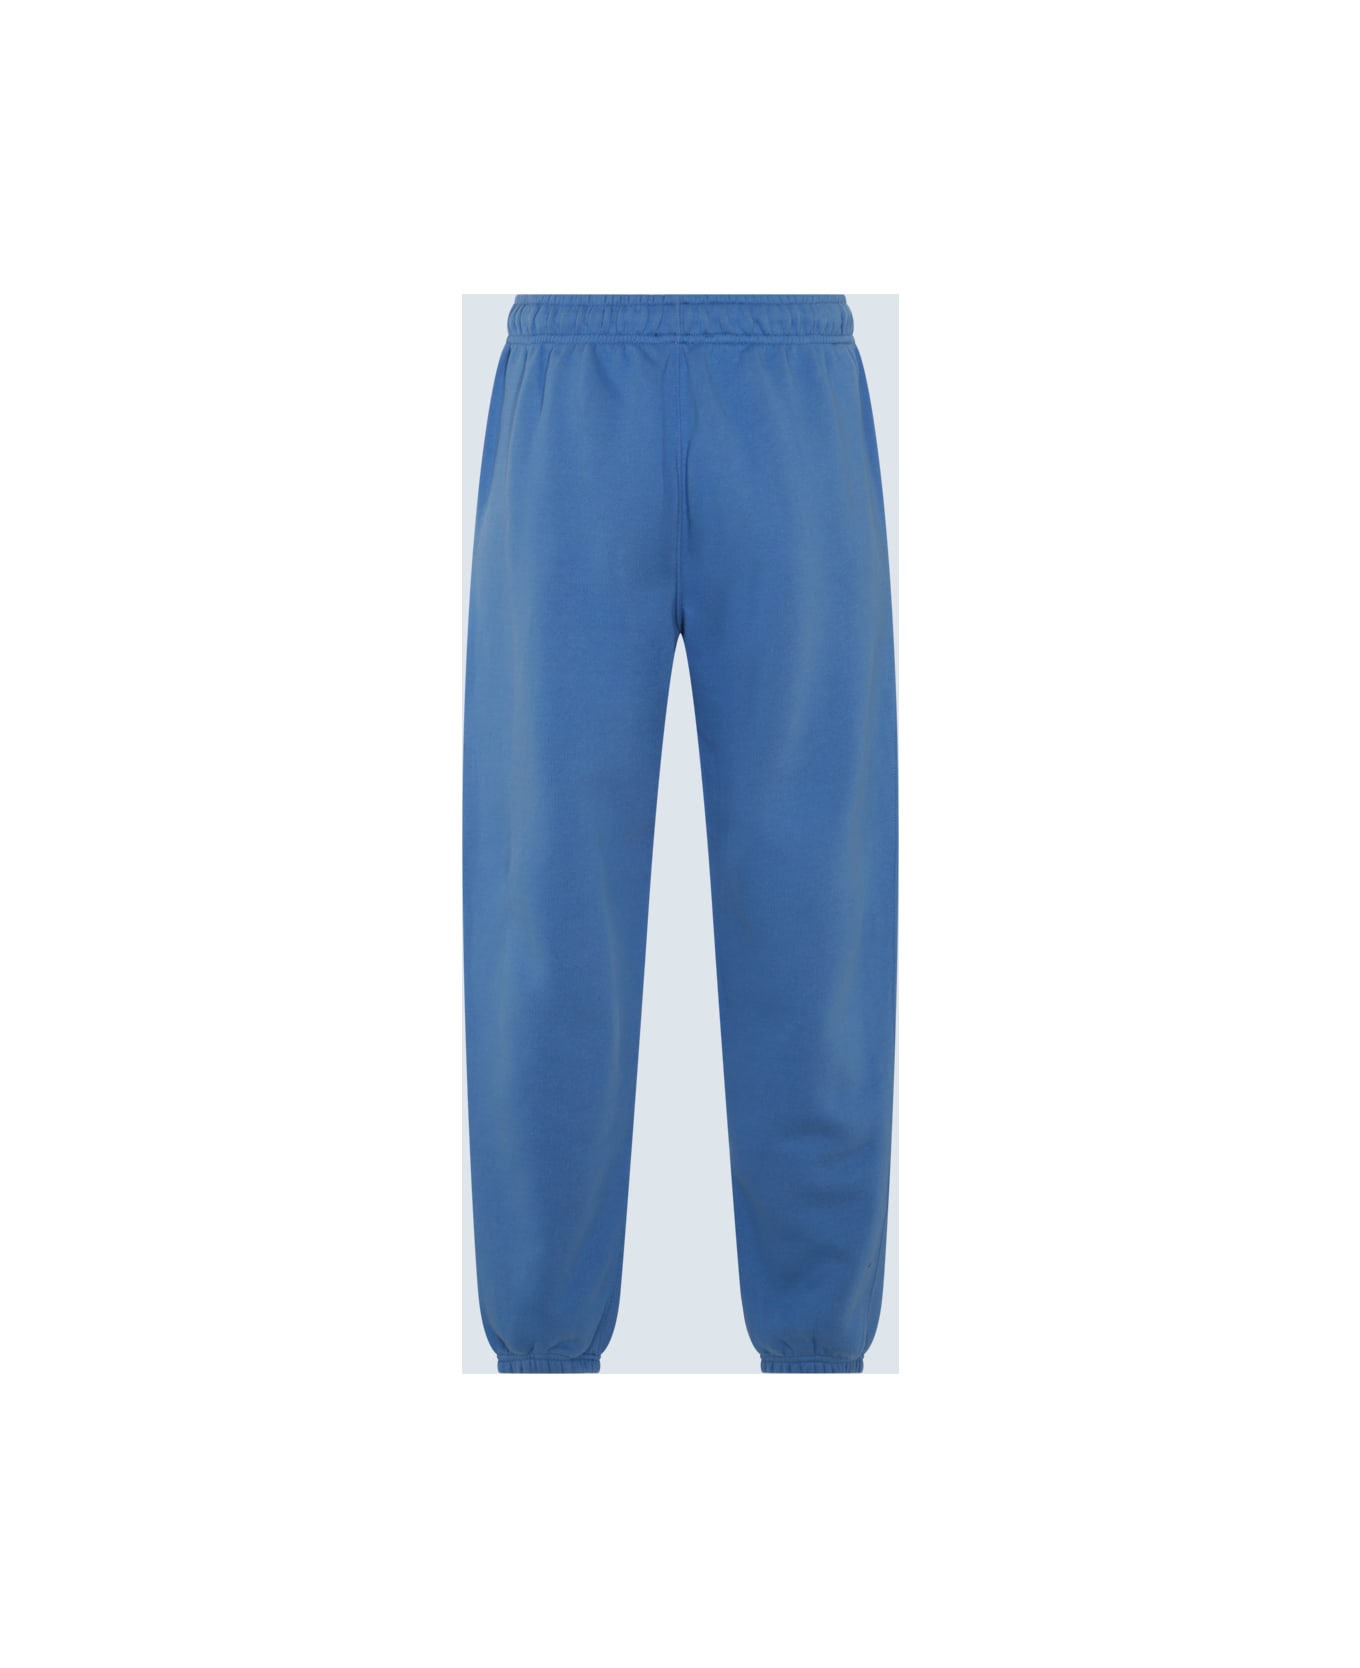 Polo Ralph Lauren Summer Blue Cotton Blend Track Pants - SUMMER BLUE